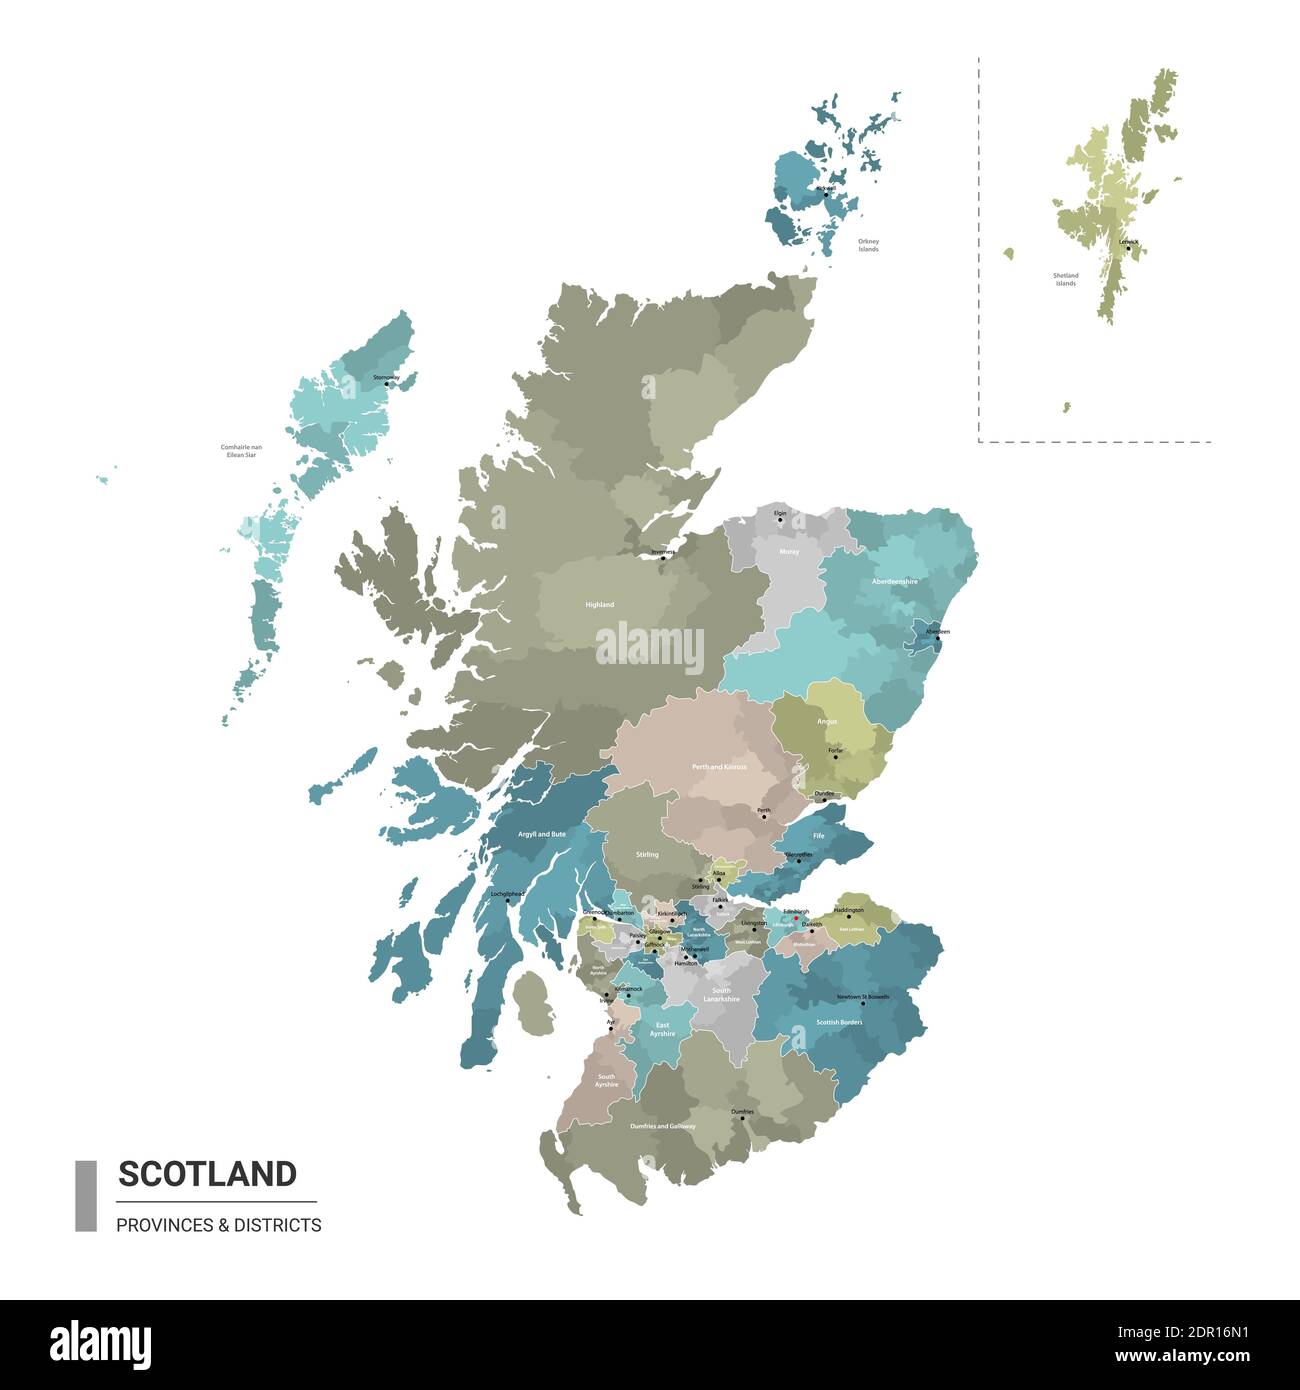 Scozia higt mappa dettagliata con suddivisioni. Mappa amministrativa della Scozia con il nome dei distretti e delle città, colorata dagli stati e dal dist amministrativo Illustrazione Vettoriale